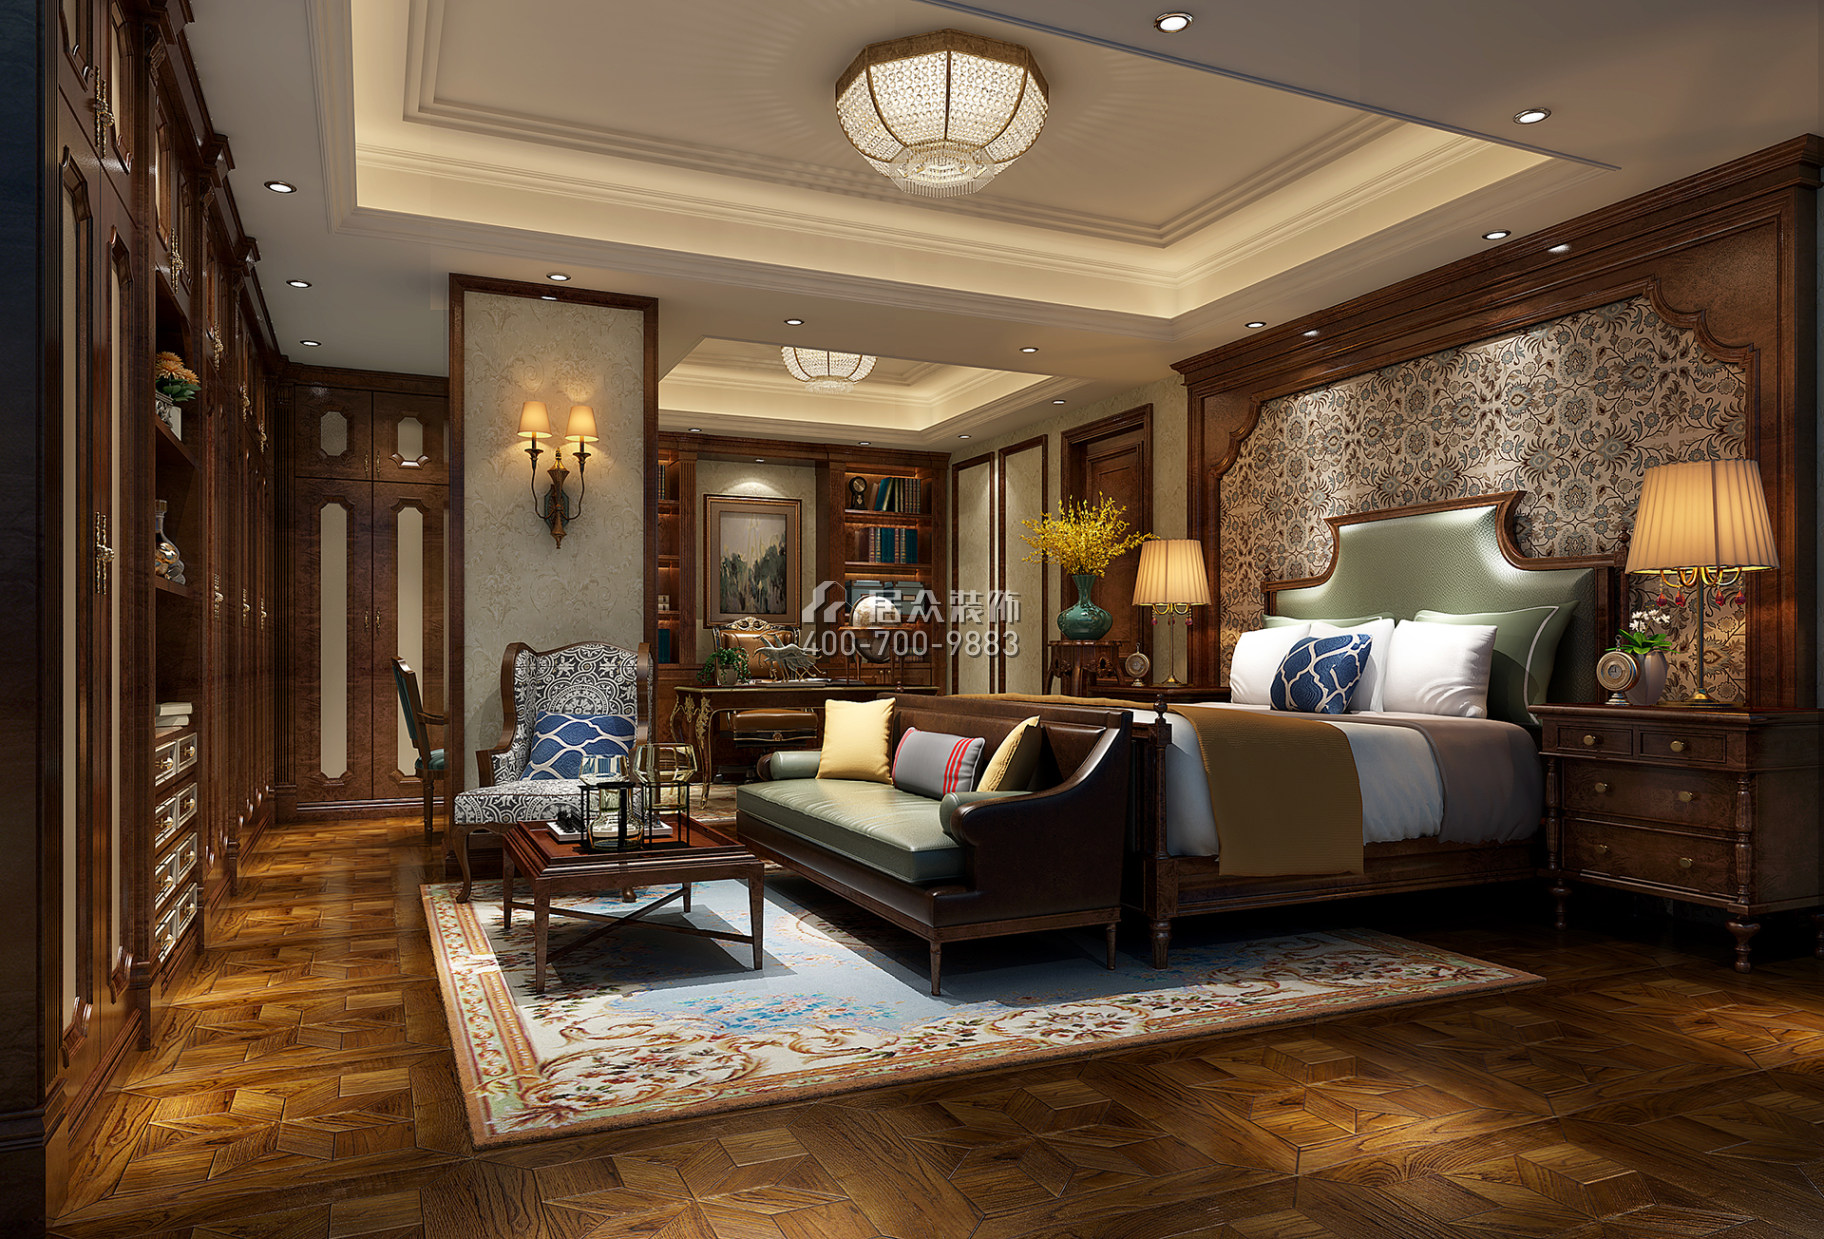 全盛紫悦龙庭165平方米美式风格复式户型卧室装修效果图